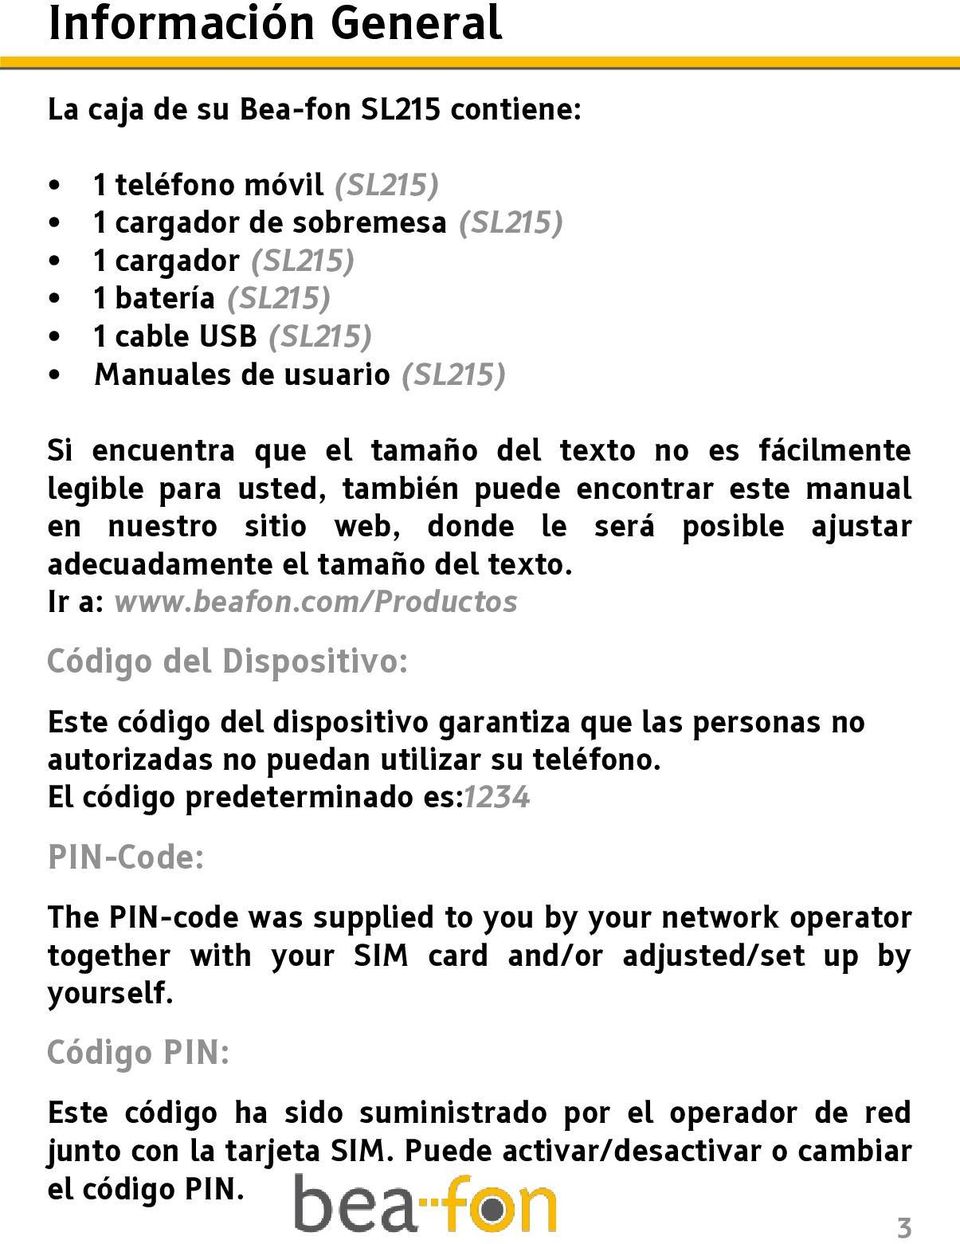 Ir a: www.beafon.com/productos Código del Dispositivo: Este código del dispositivo garantiza que las personas no autorizadas no puedan utilizar su teléfono.